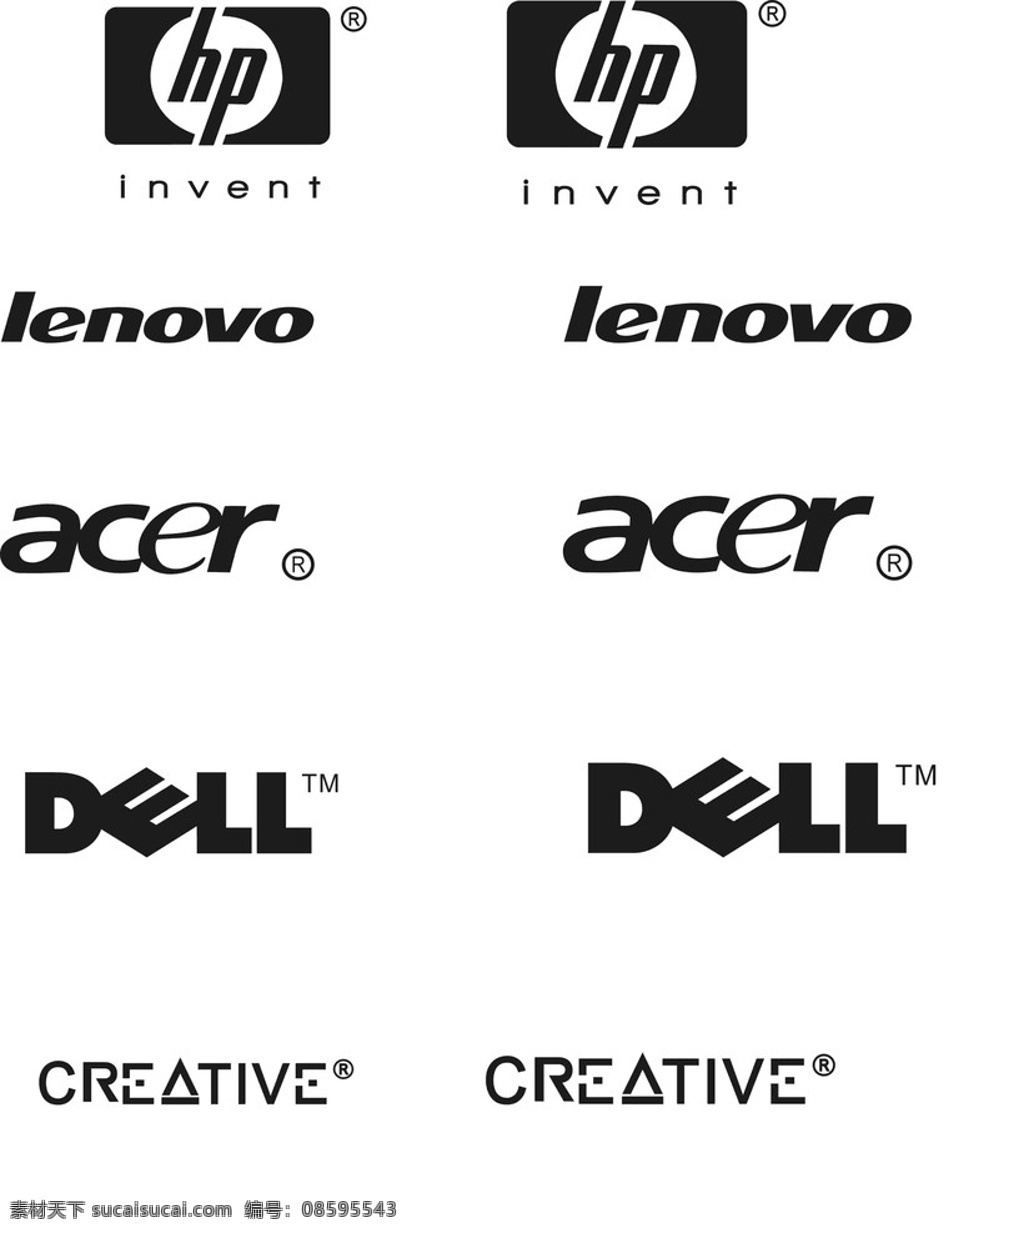 电脑标志 电脑图标 电脑logo 惠普logo 联想logo 戴尔logo 宏基logo 电脑商标 企业 logo 标志 标识标志图标 矢量